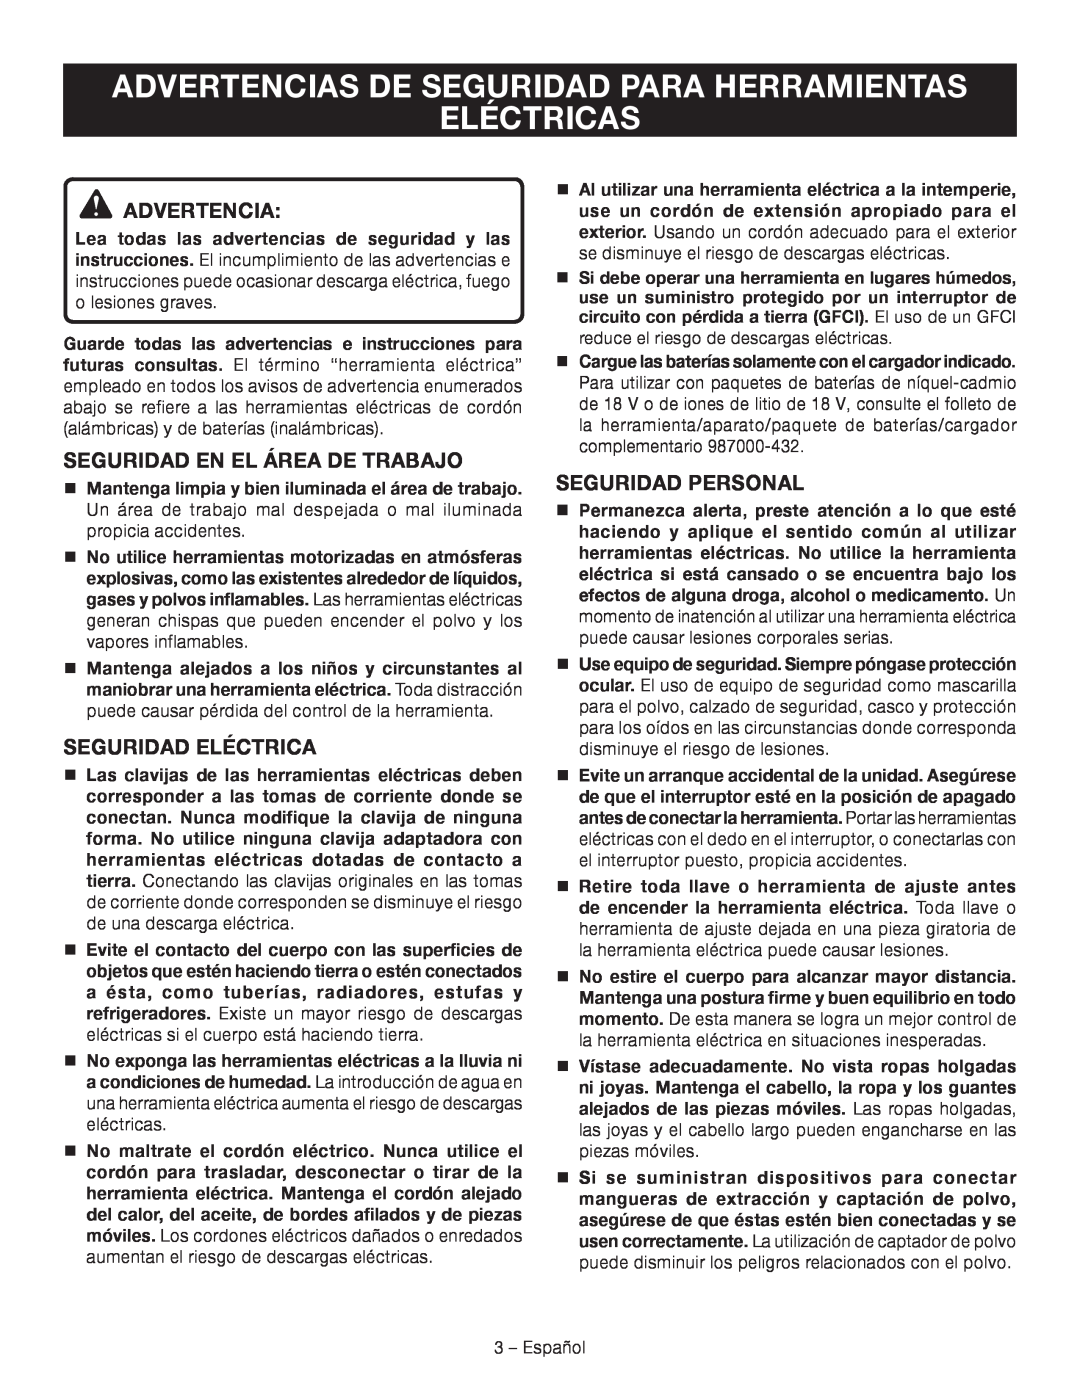 Ryobi P514 Advertencias De Seguridad Para Herramientas, Eléctricas, Seguridad En El Área De Trabajo, Seguridad Eléctrica 